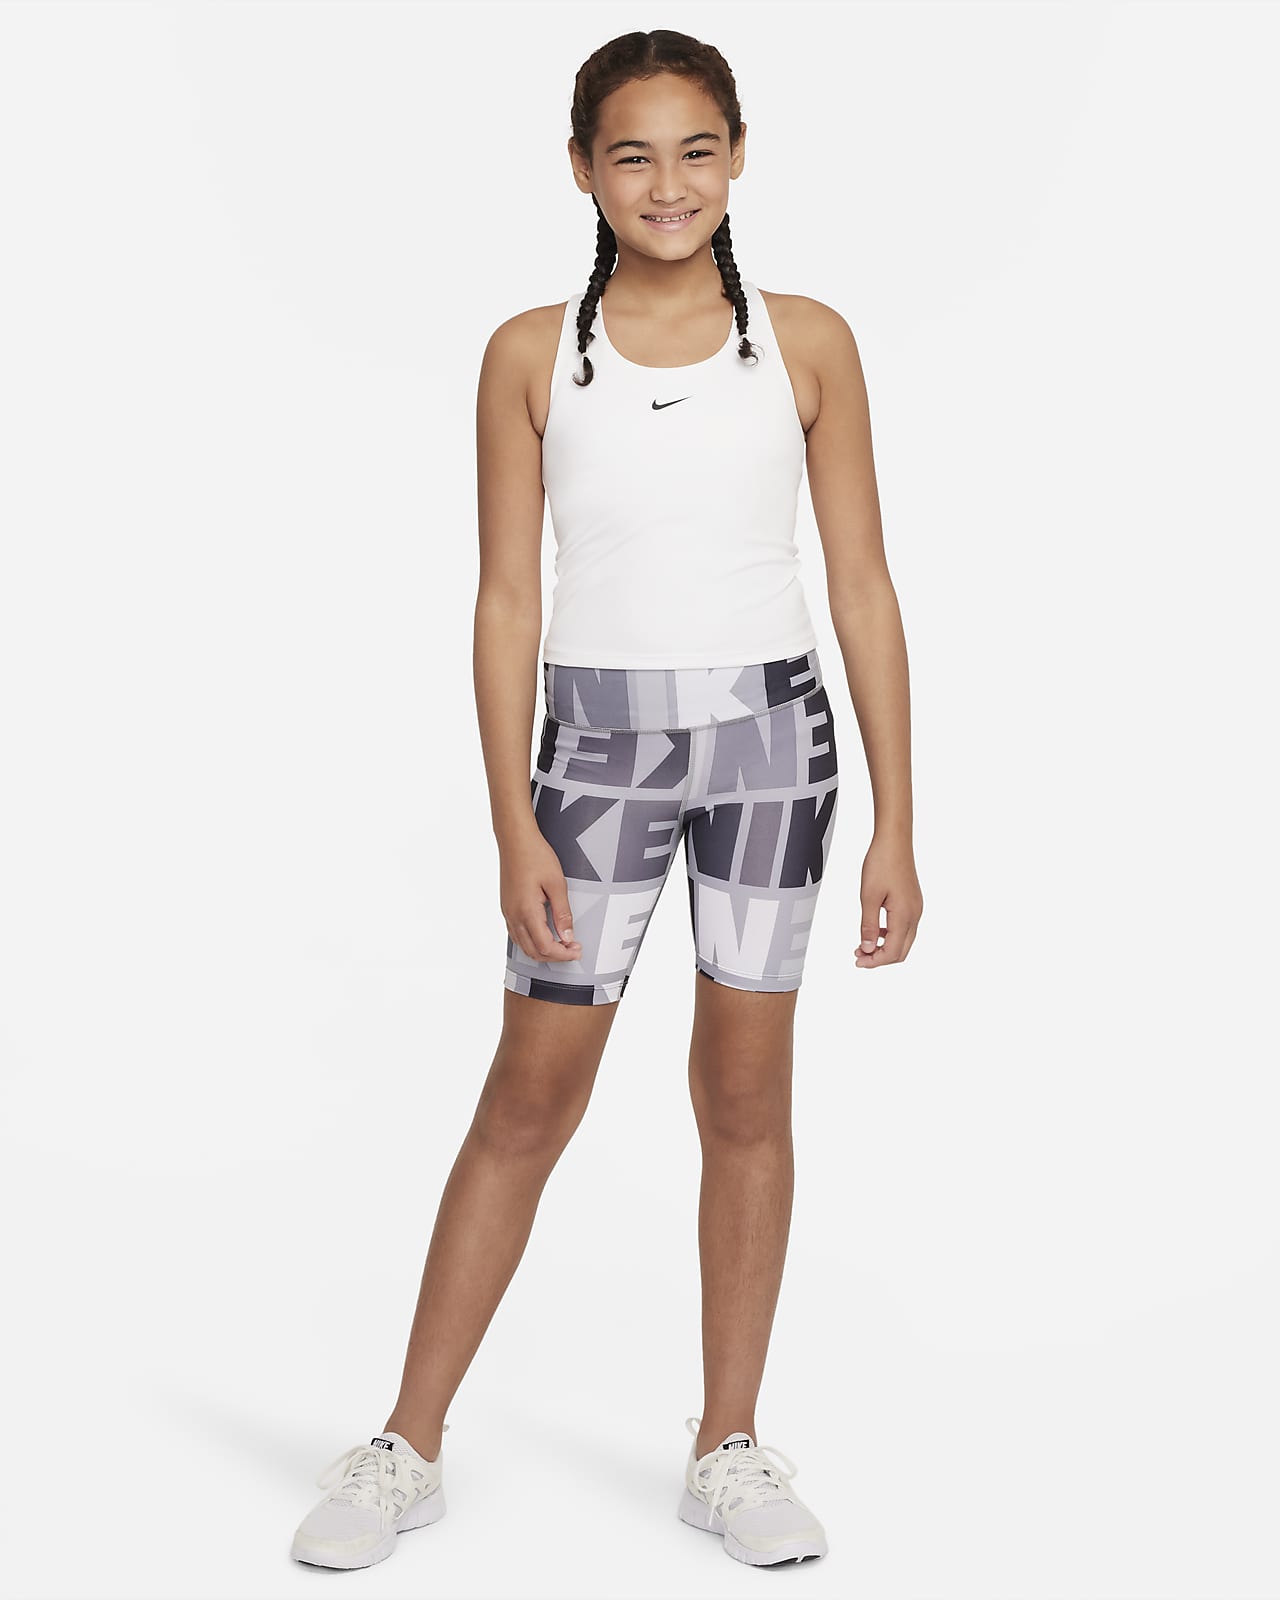 Nike Dri-FIT One Older Kids' (Girls') Crop Tank. Nike SG